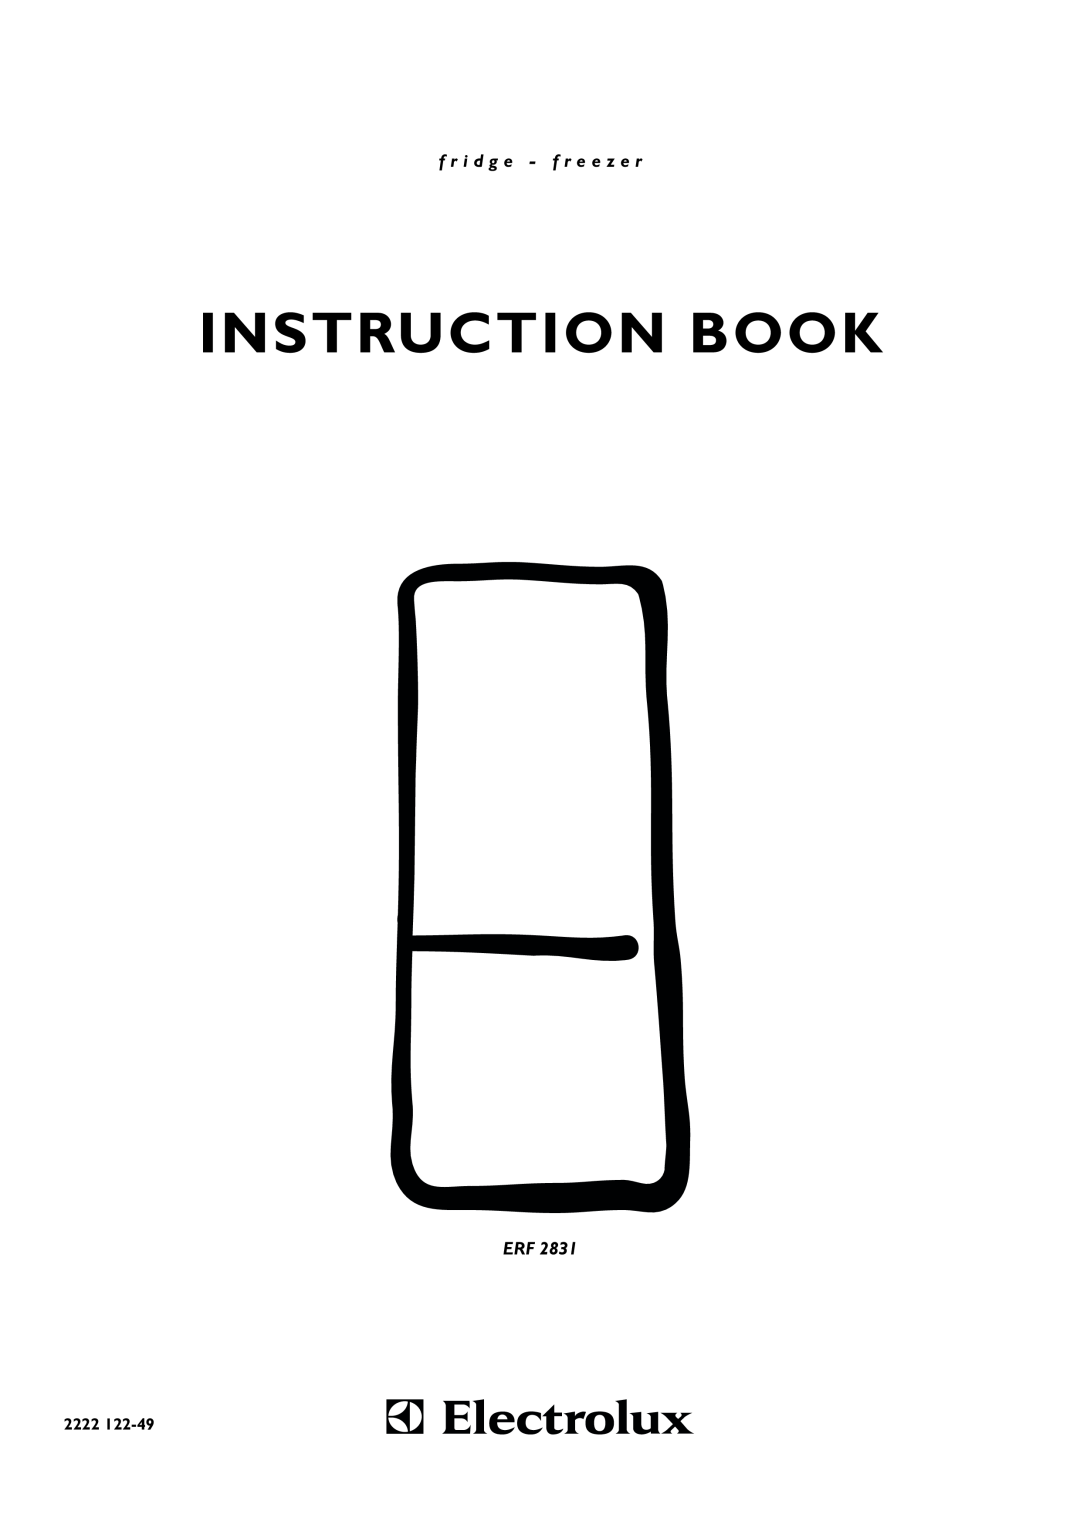 Electrolux ERF 2831 manual Instruction Book, f r i d g e - f r e e z e r, 2222 